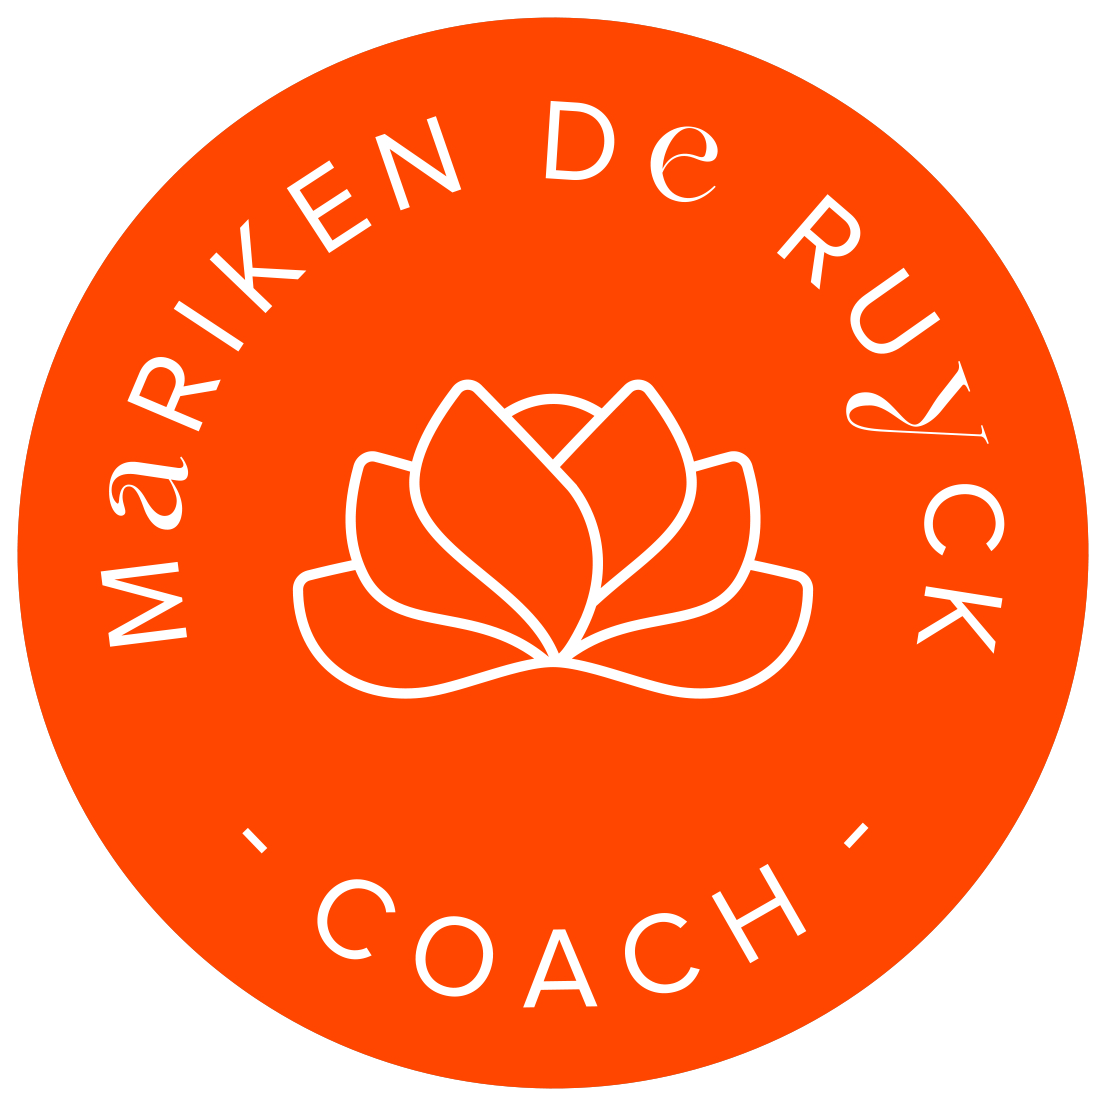 Coach Mariken